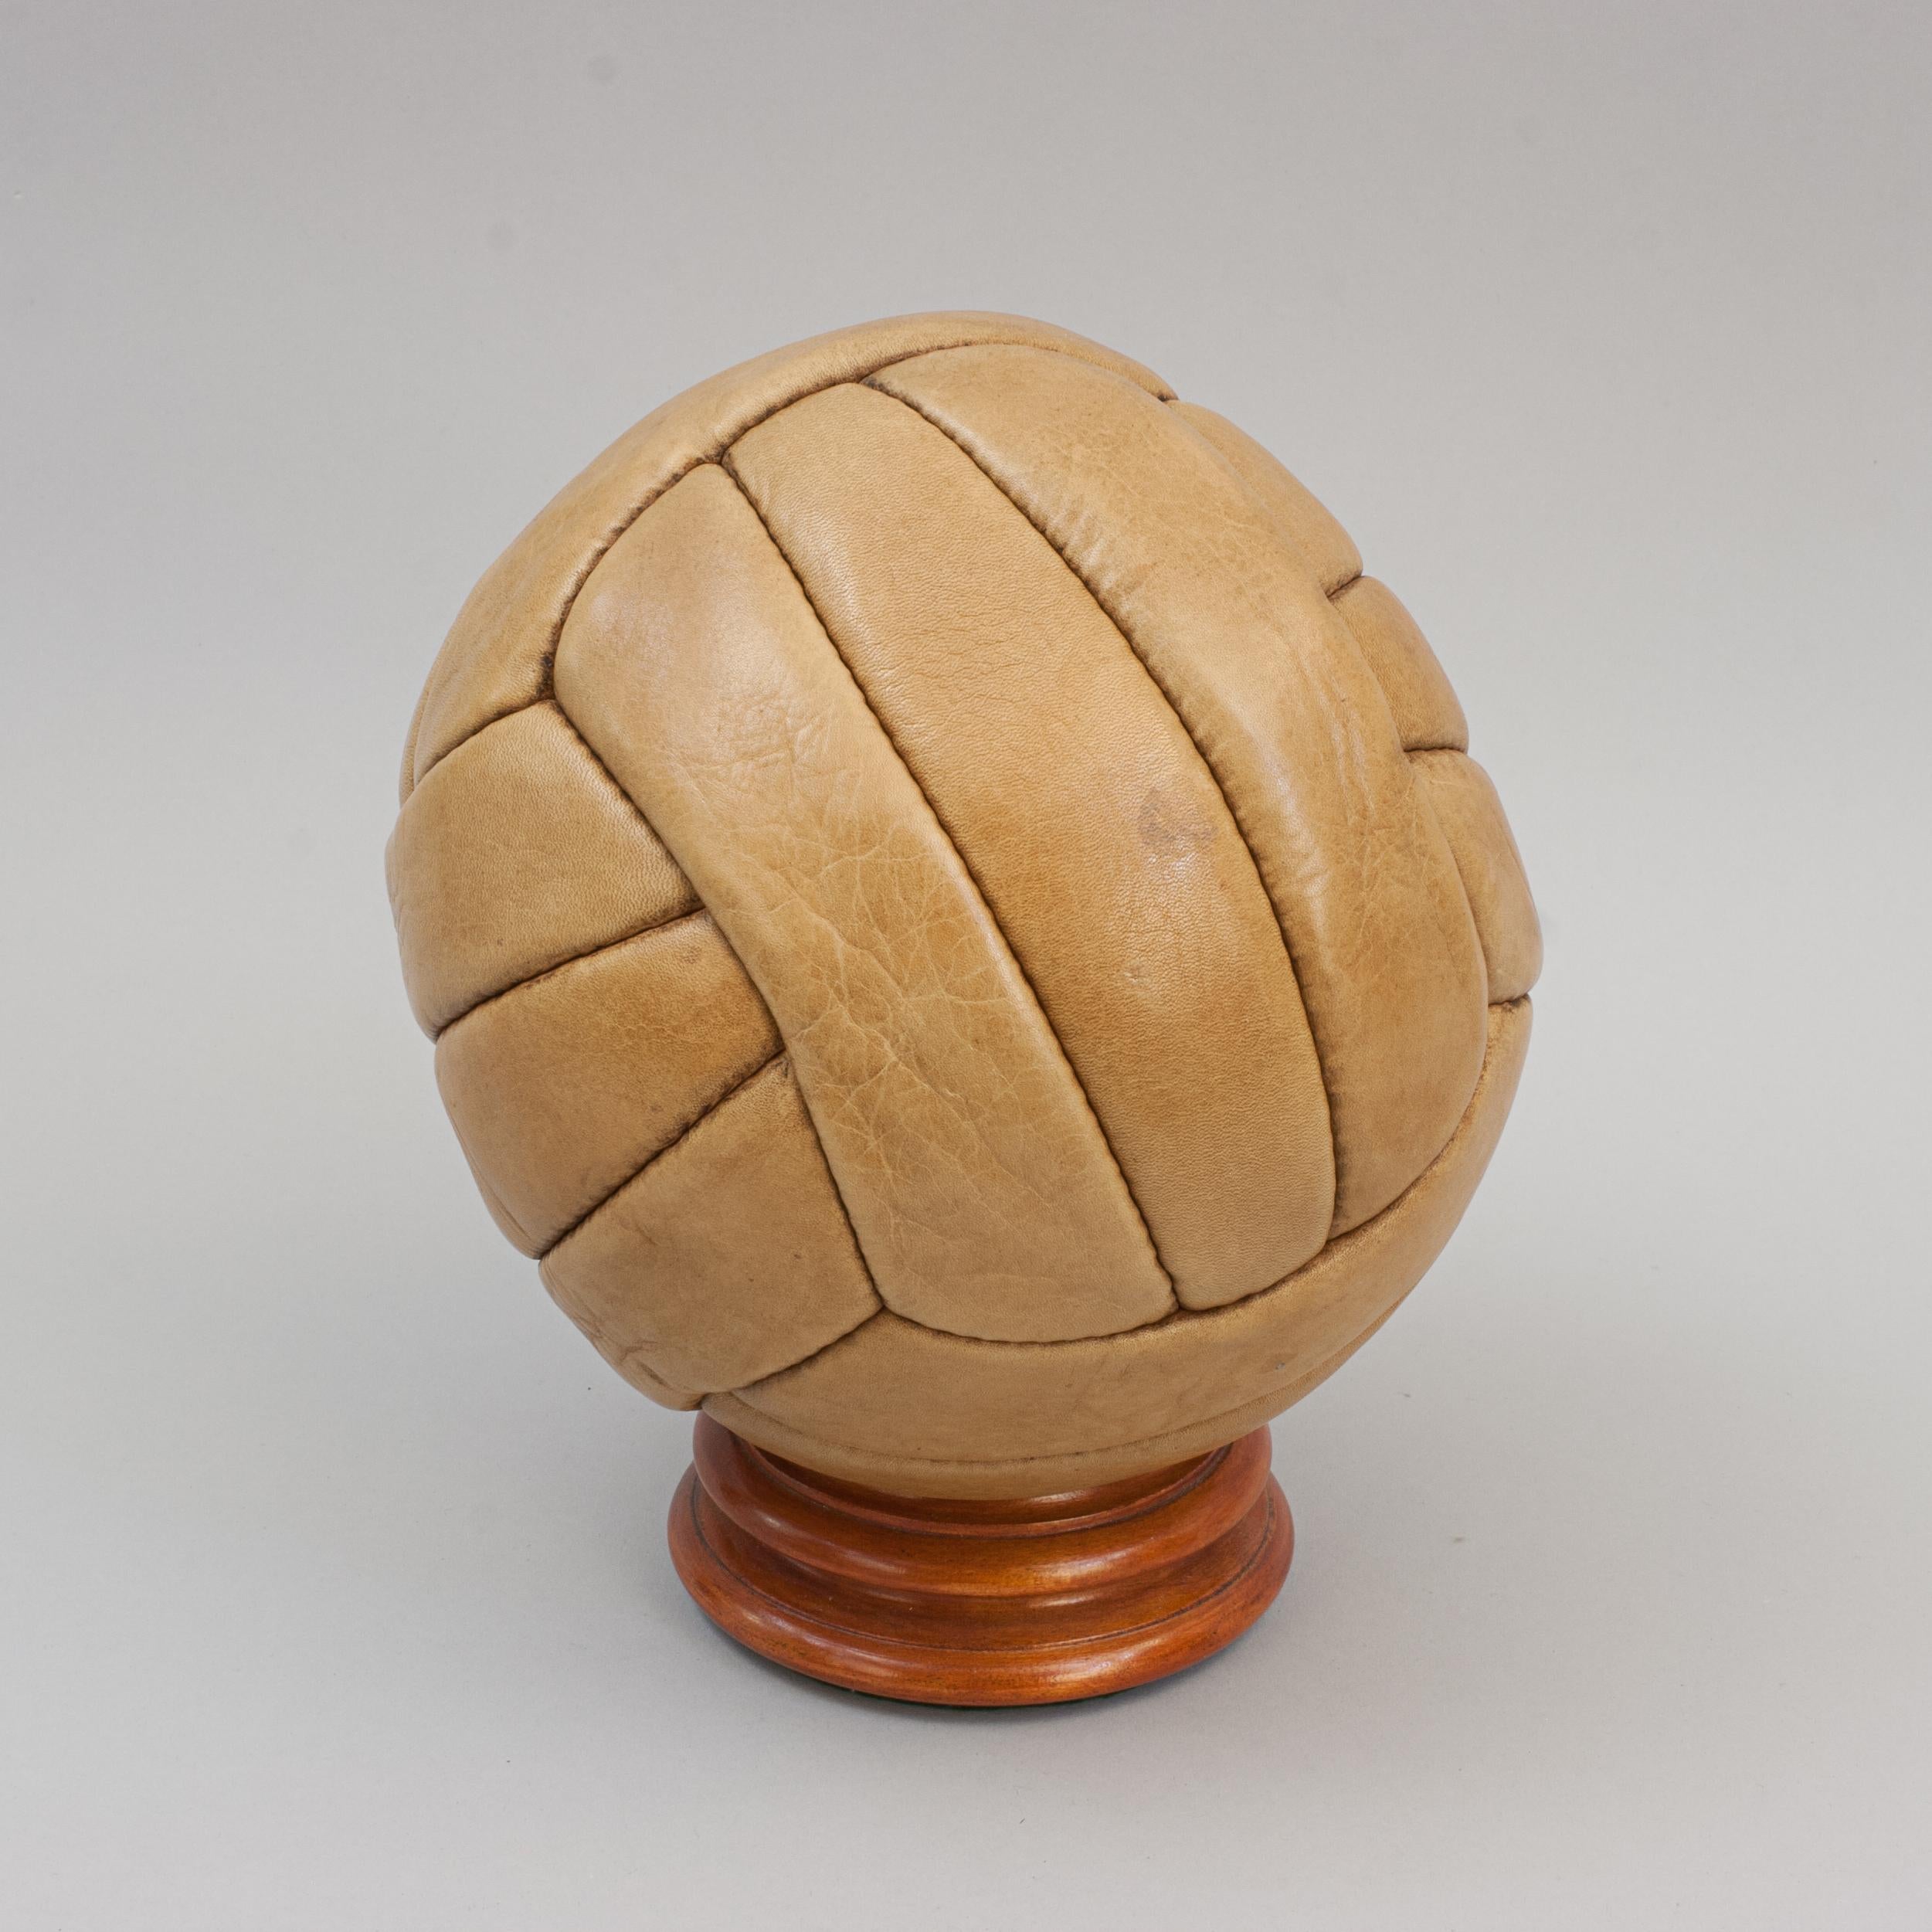 18 panel soccer ball